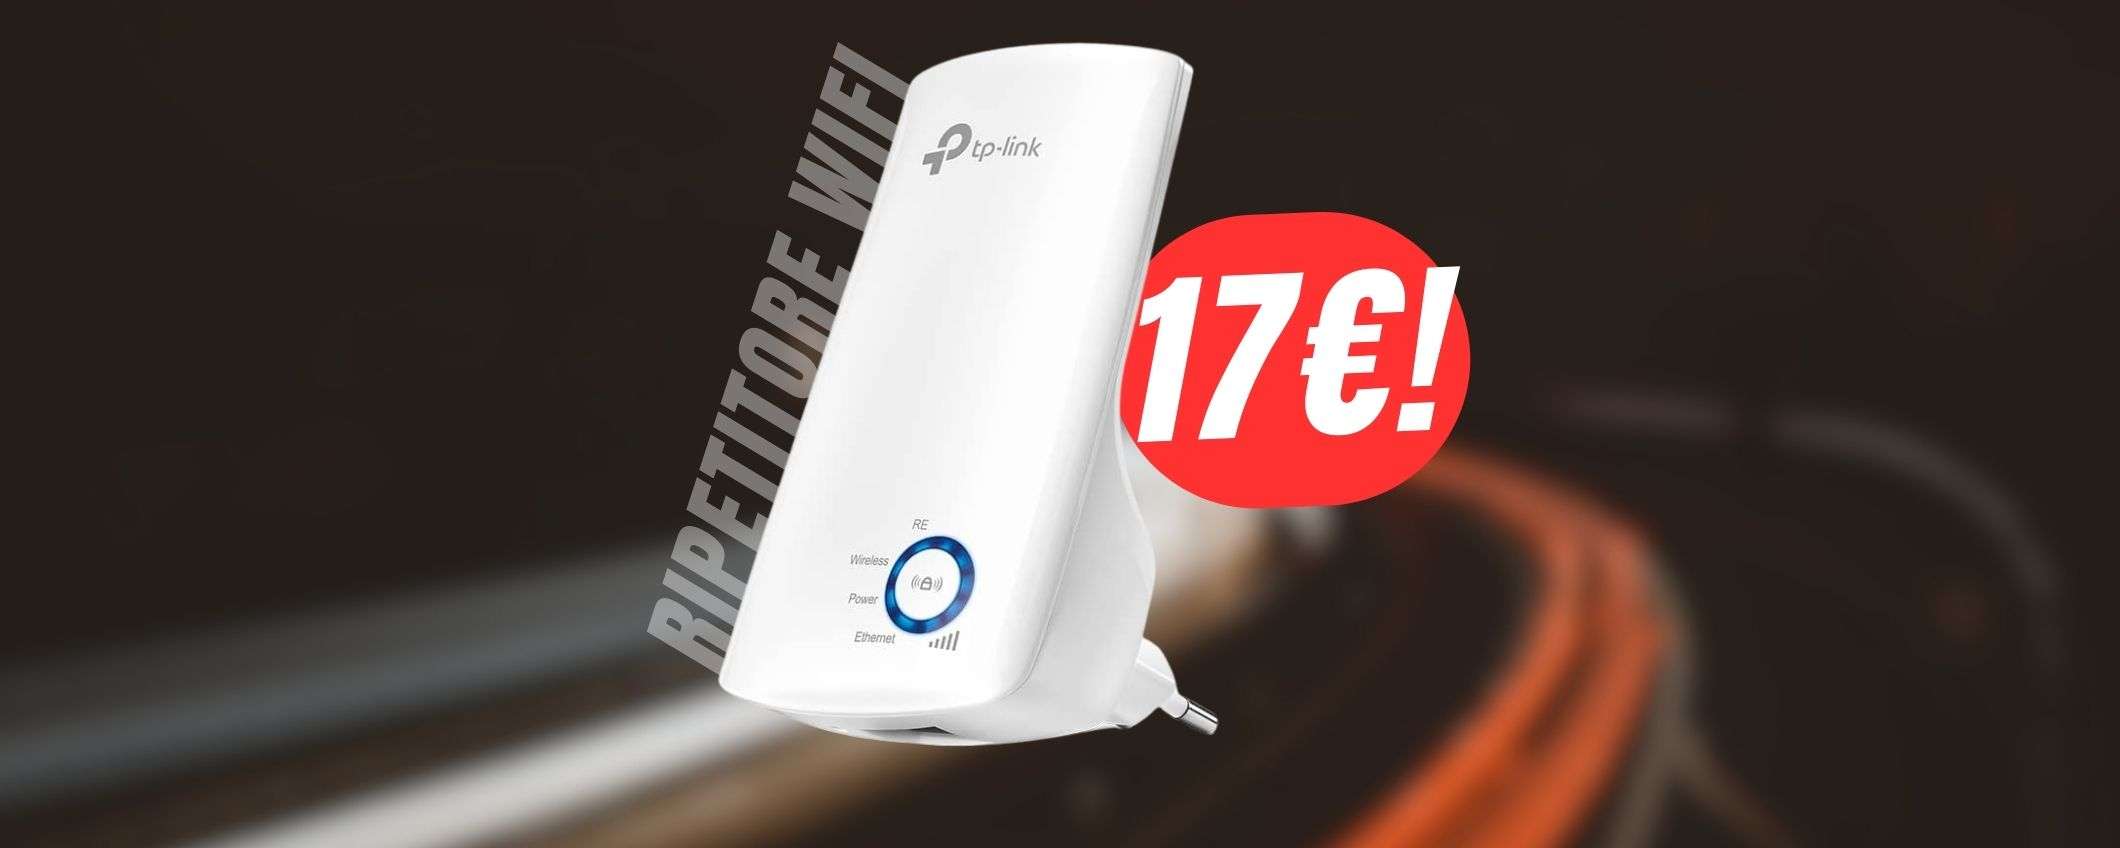 Ripetitore WiFi a 17€?! Risolvi i problemi di connessione con due spicci!